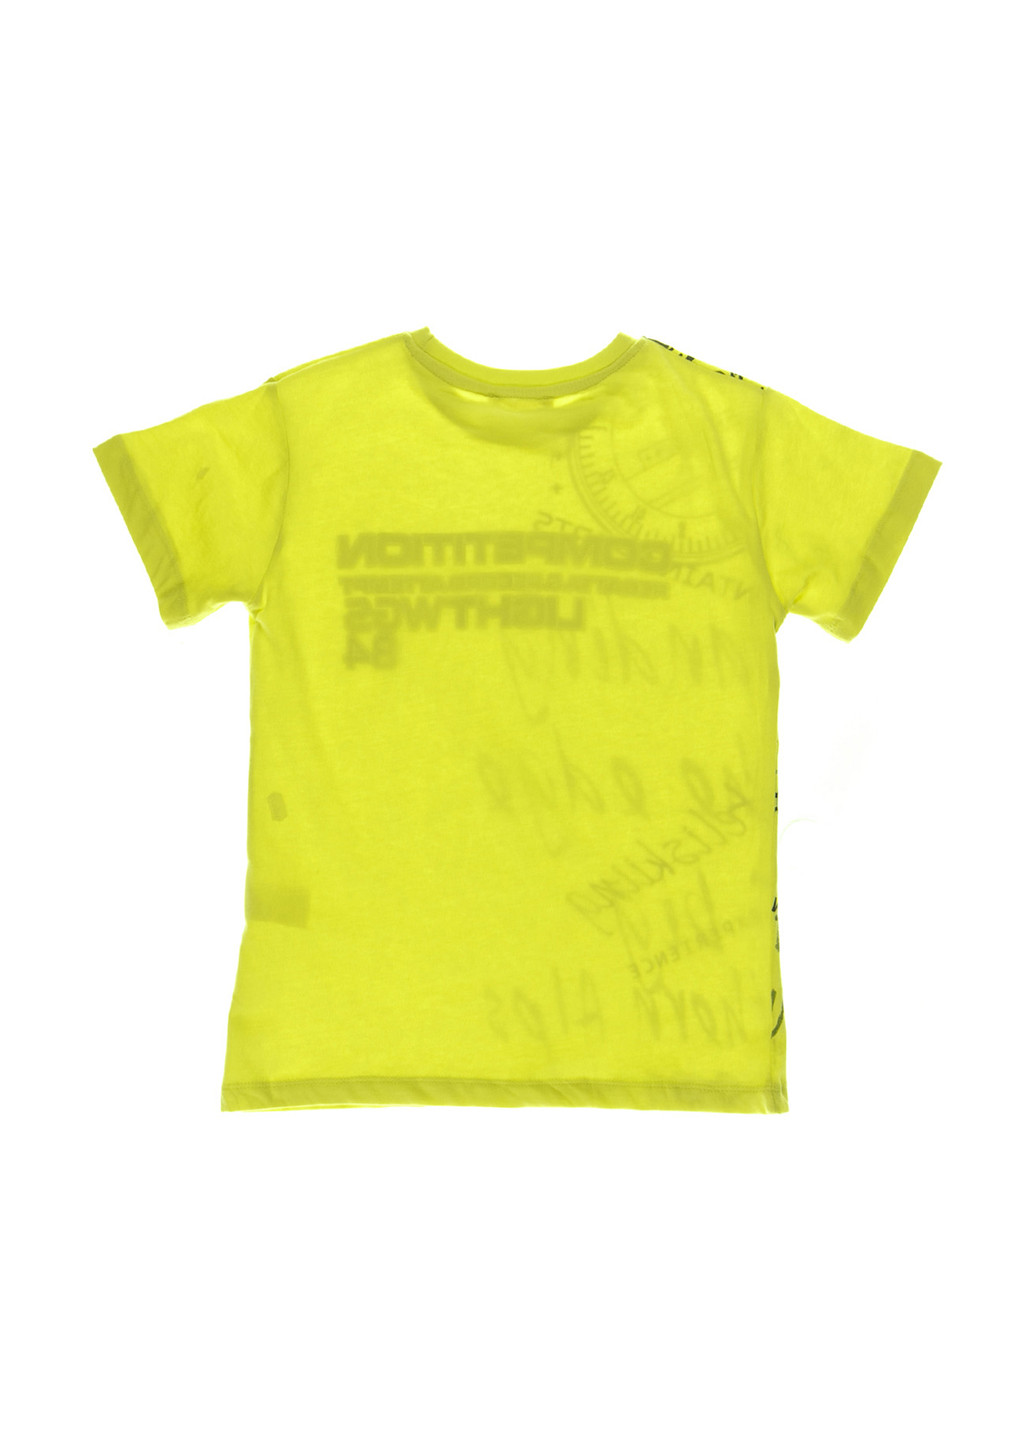 Салатова літня футболка з коротким рукавом Breeze